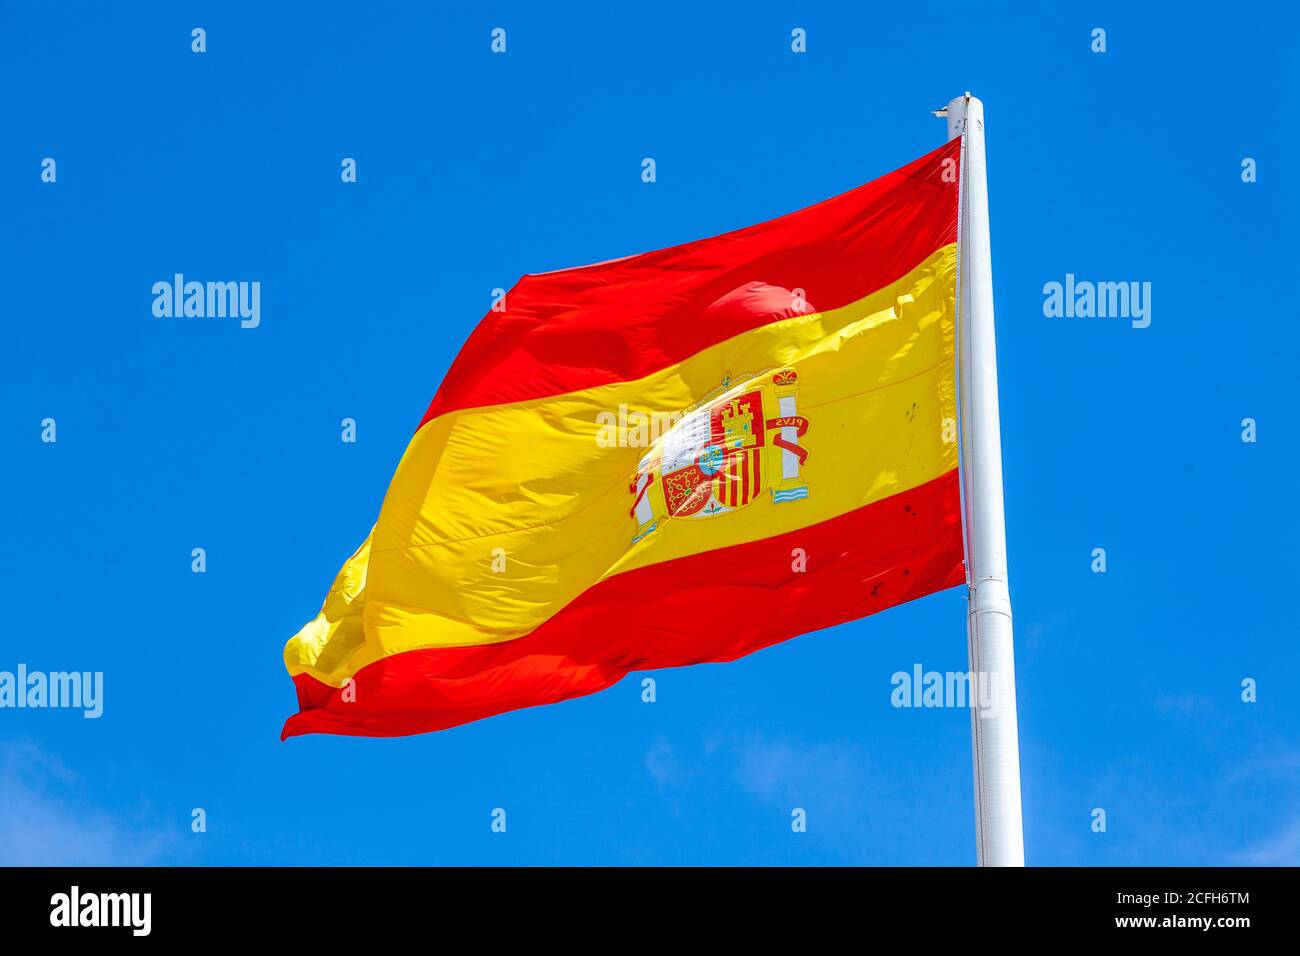 La bandiera della Spagna, come definita nella Costituzione spagnola del 1978, è composta da tre strisce orizzontali: Rossa, gialla e rossa, la striscia gialla Foto Stock